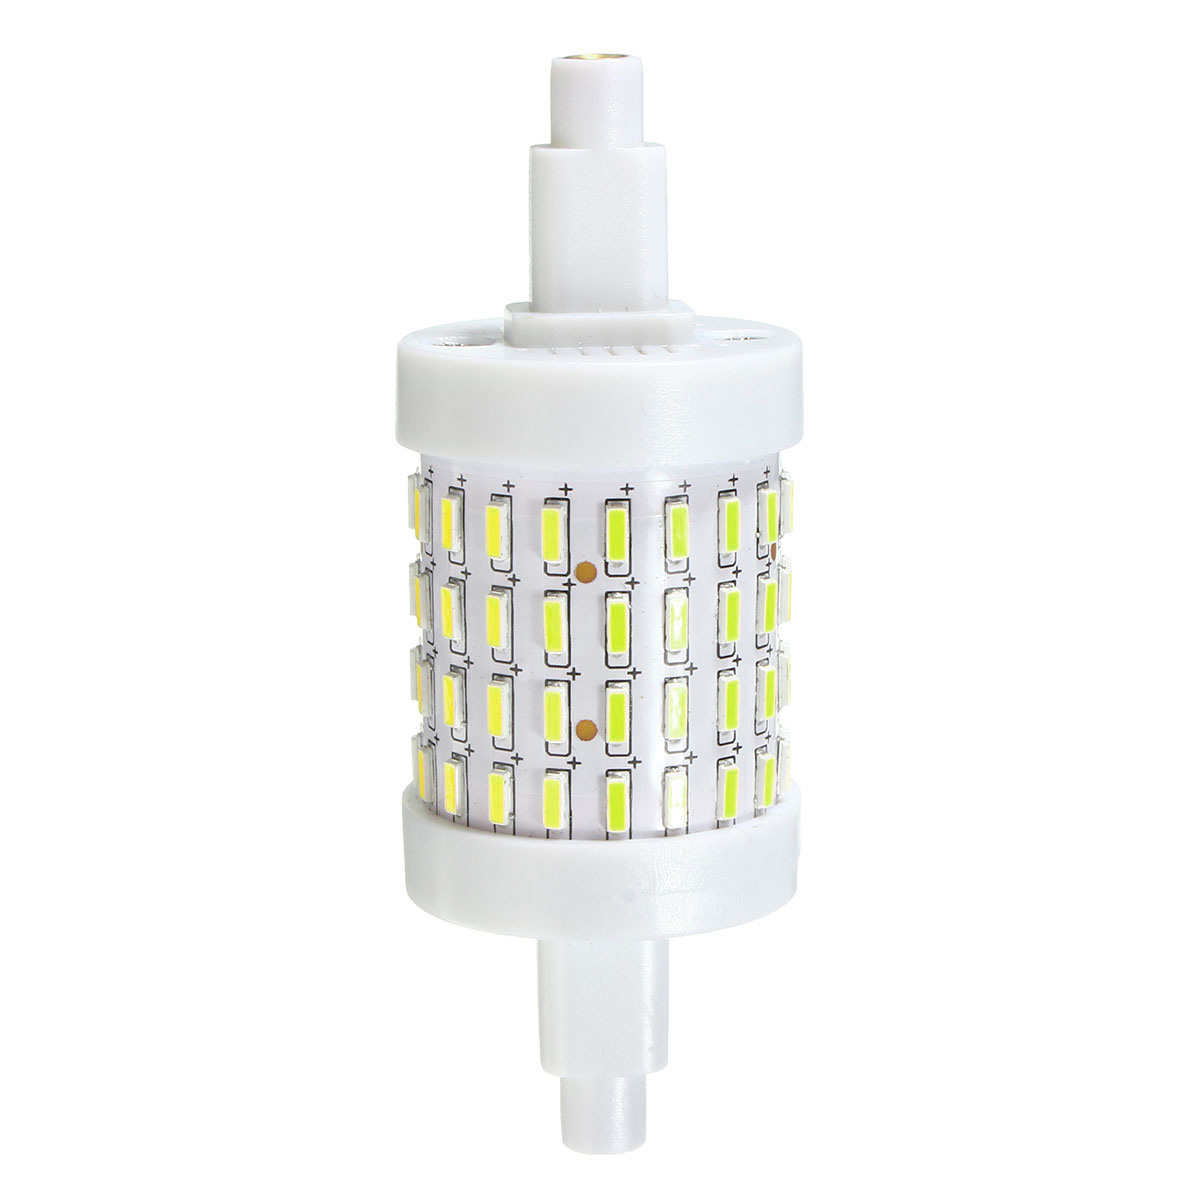 R7S-5W-72-SMD-4014-78mm-LED-Warm-White-White-Corn-Light-Lamp-Bulb-AC85-265V-1048139-9